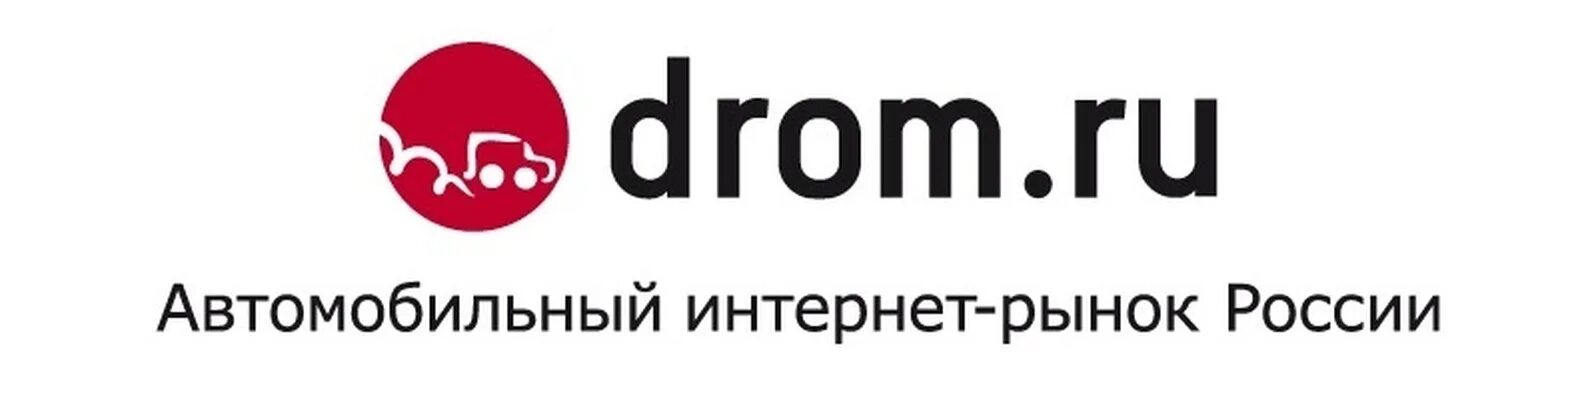 Дром ру т. Дром ру. Drom.ru логотип. Дром картинки. Логотип дром логотип.